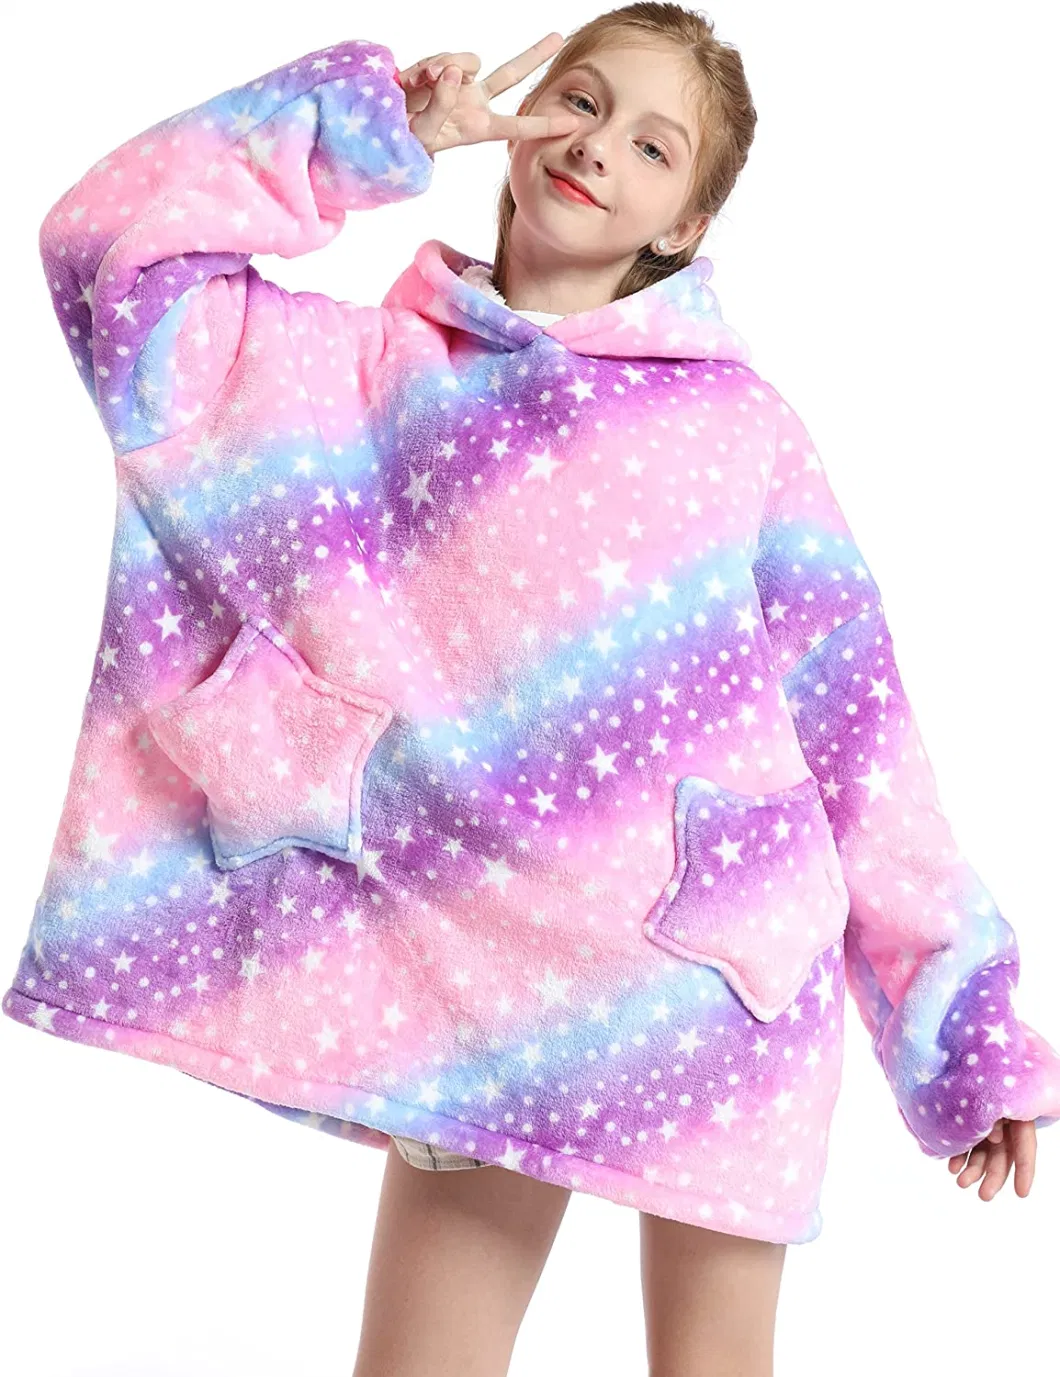 High Quality New Child TV Oversized Wearable Fleece Outdoor Hoodie Sweatshirt Blanket with Sleeves